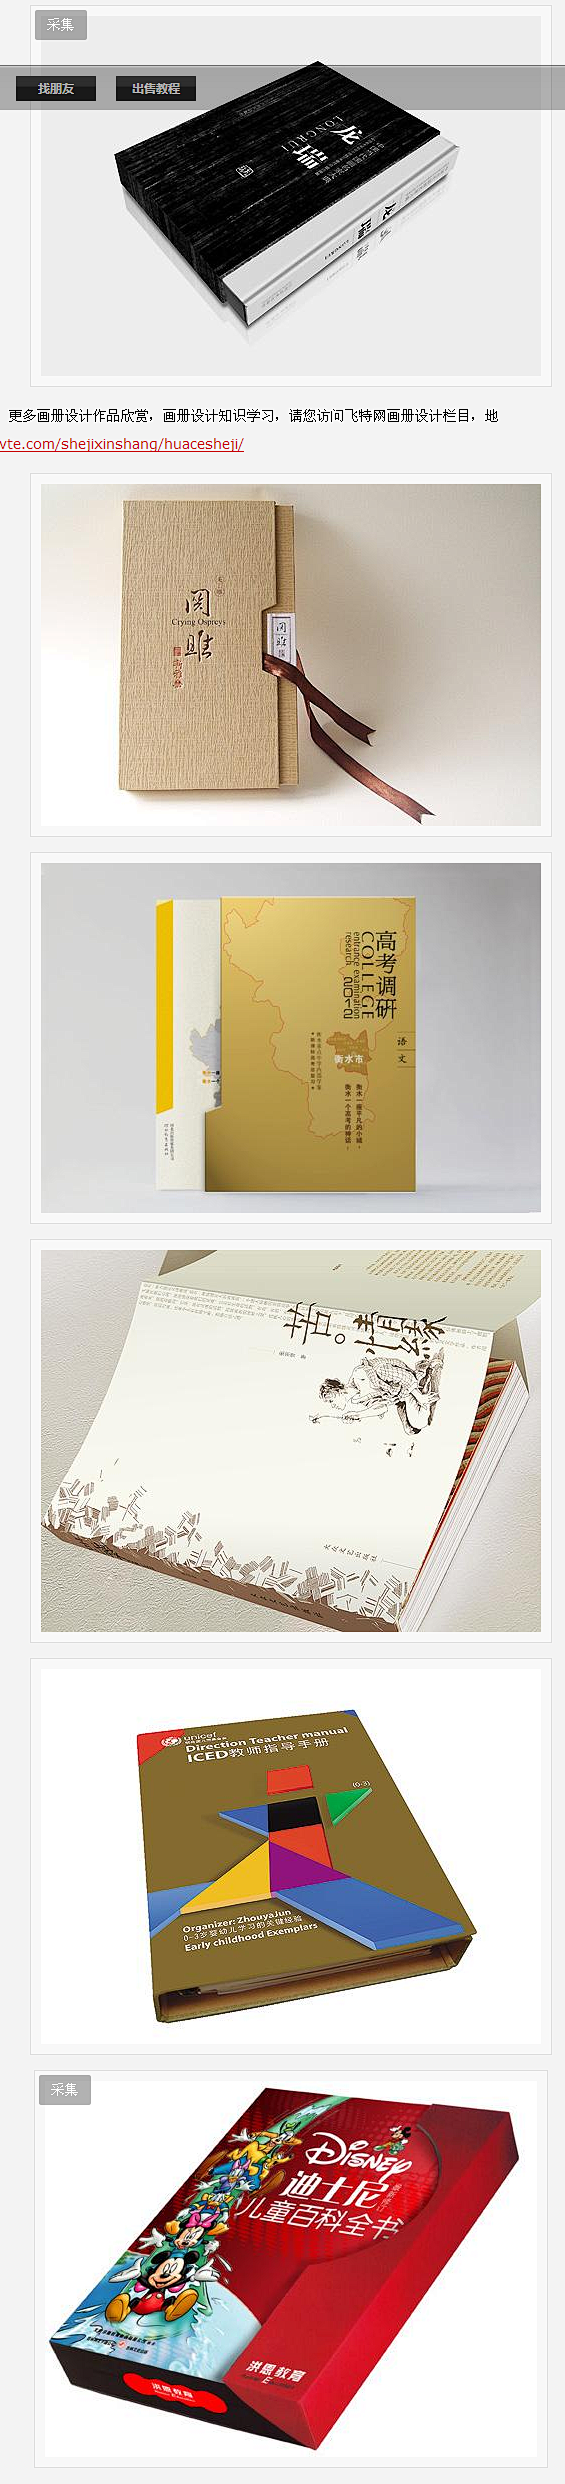 简洁优秀的书籍封面设计 - 画册设计 -...